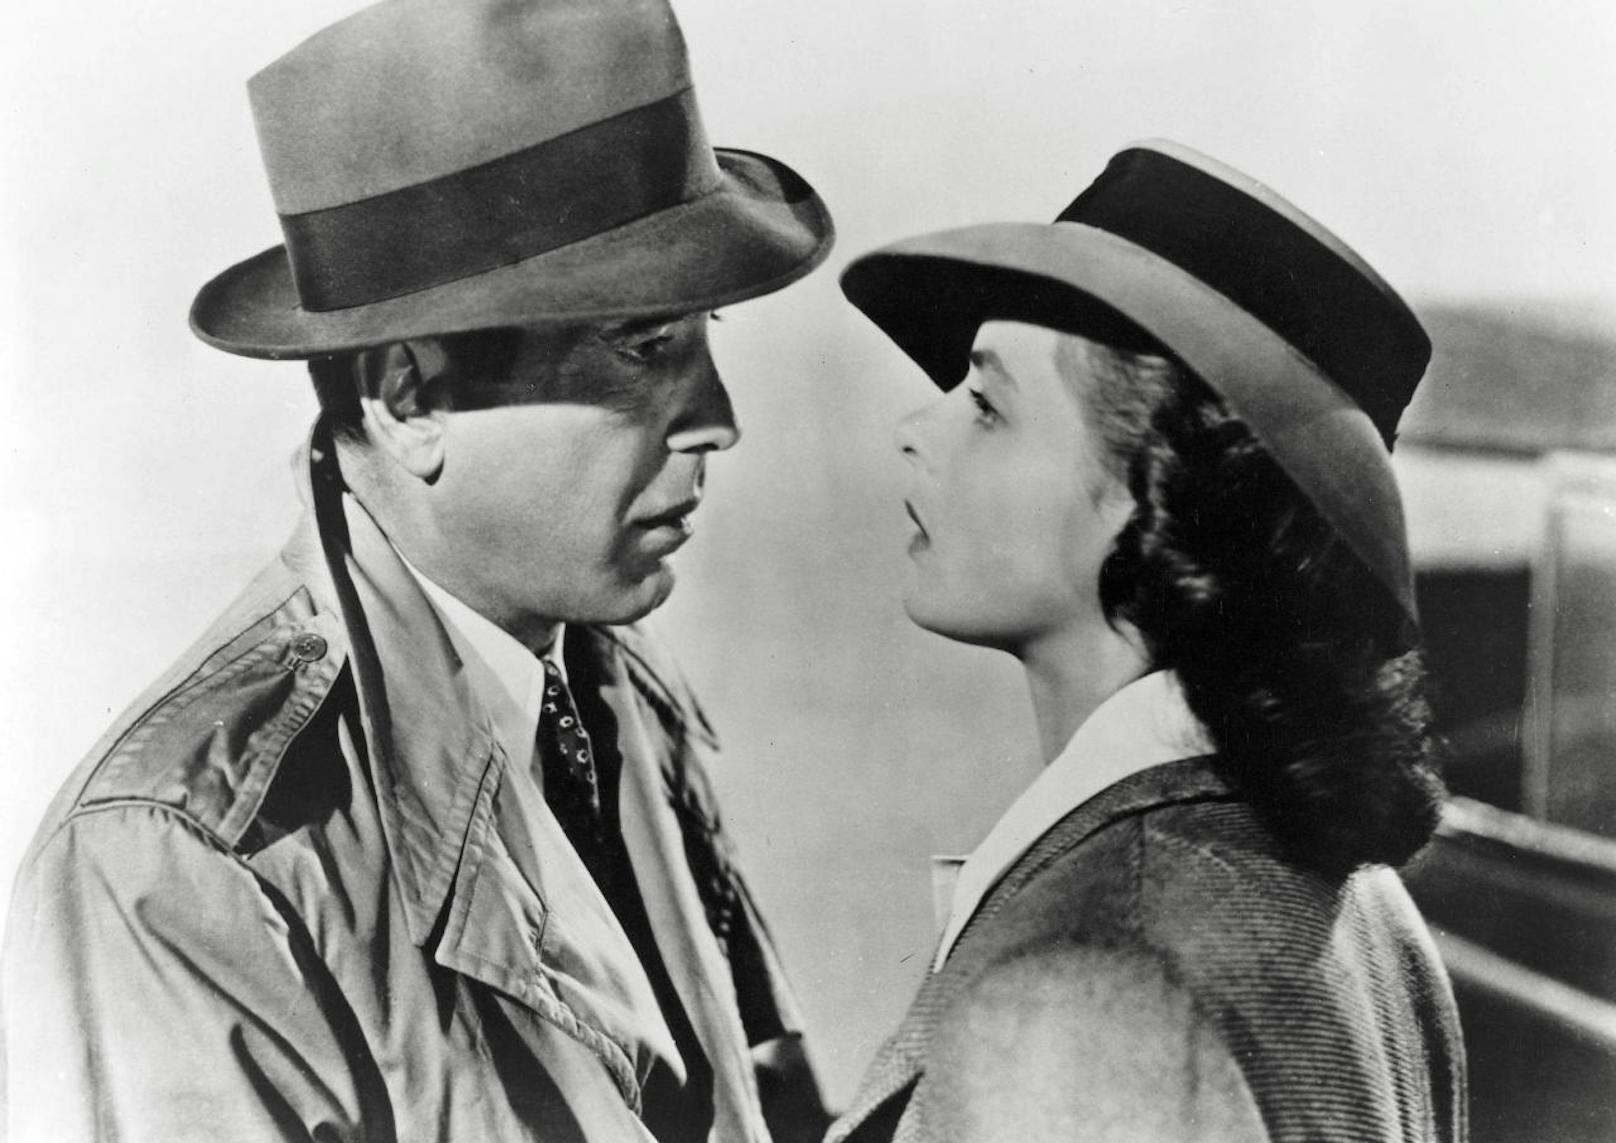 Besondere Popularität erfuhr die Marke Borsalino Mitte des 20. Jahrhunderts durch Kino und Fernsehen. So trugen Humphrey Bogart und Ingrid Bergman im Kultfilm "Casablanca" Hüte der italienischen Firma.